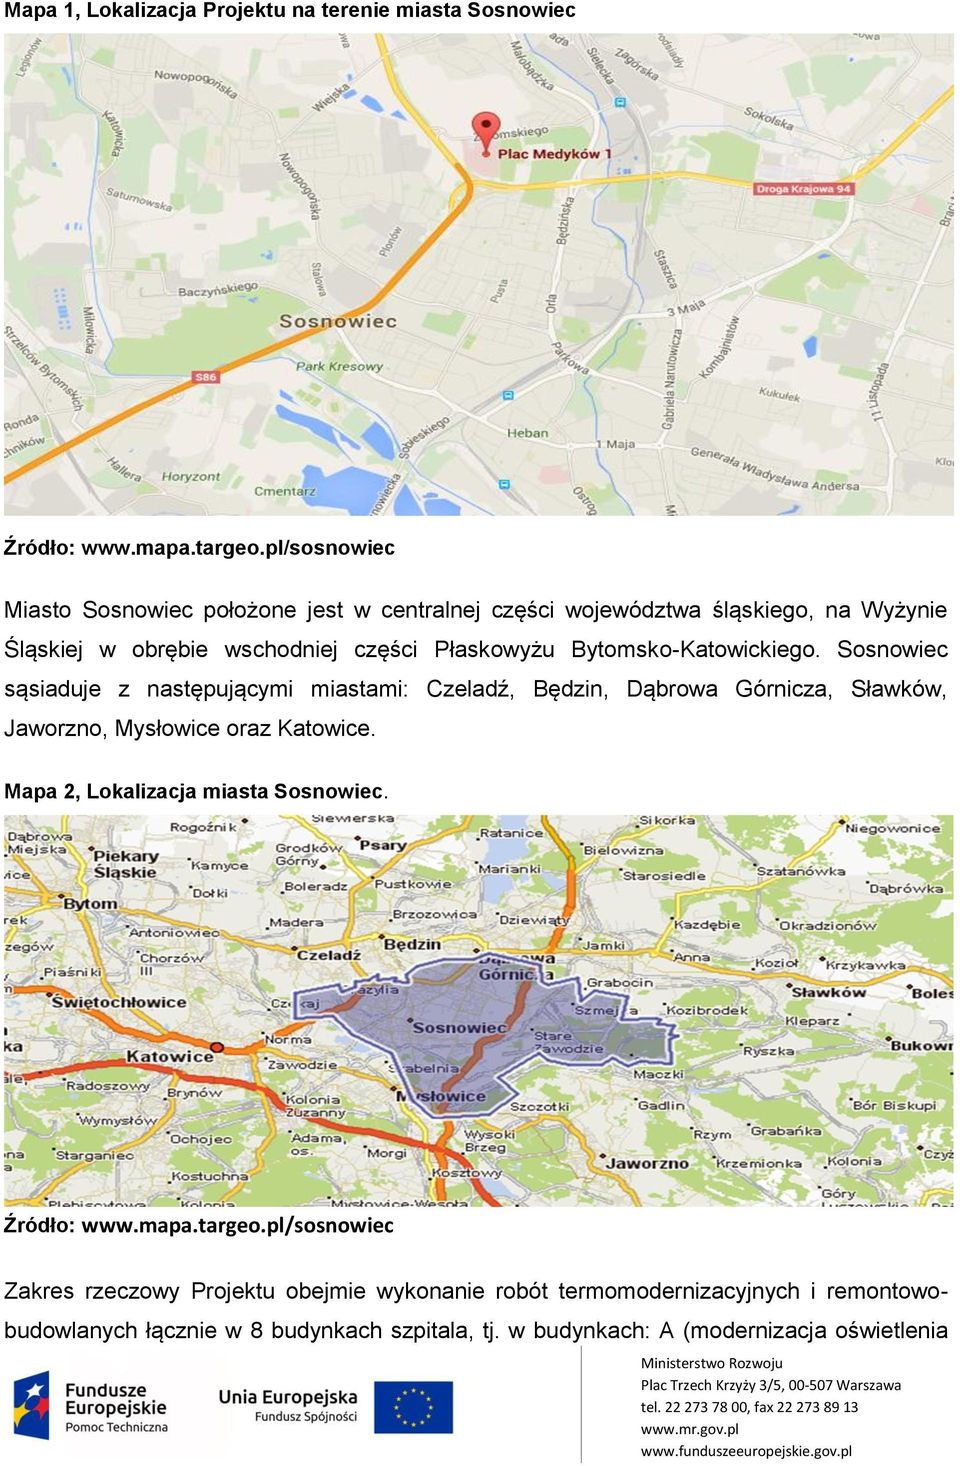 Bytomsko-Katowickiego. Sosnowiec sąsiaduje z następującymi miastami: Czeladź, Będzin, Dąbrowa Górnicza, Sławków, Jaworzno, Mysłowice oraz Katowice.